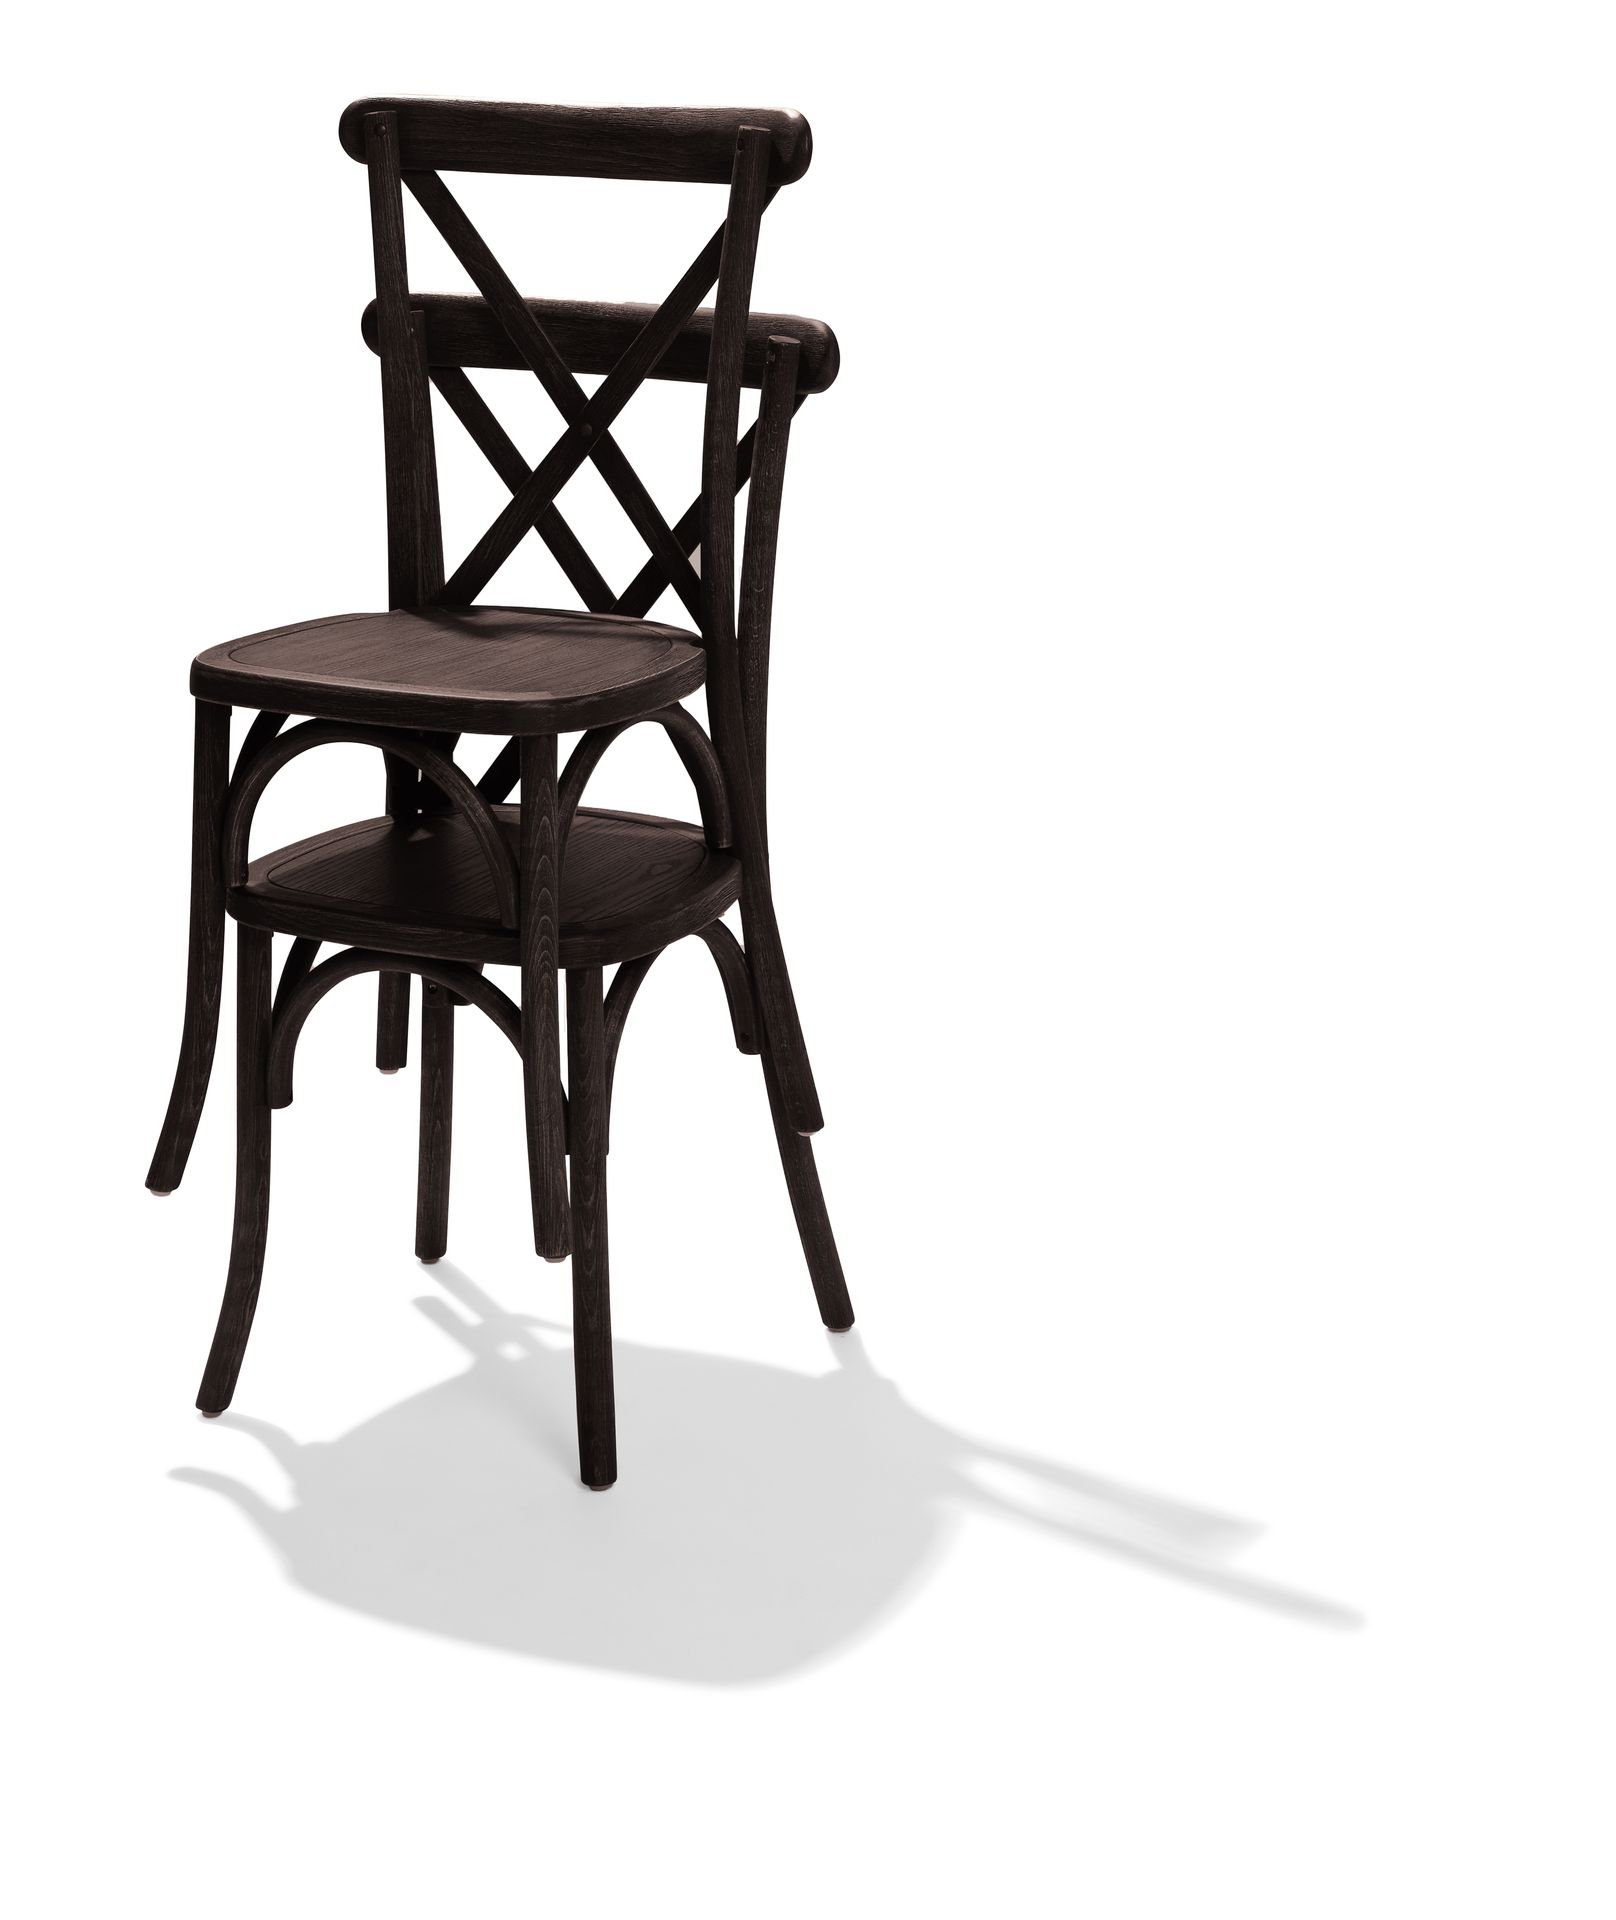 Vertrouwen defect ontmoeten Crossback Stackable Chair brown